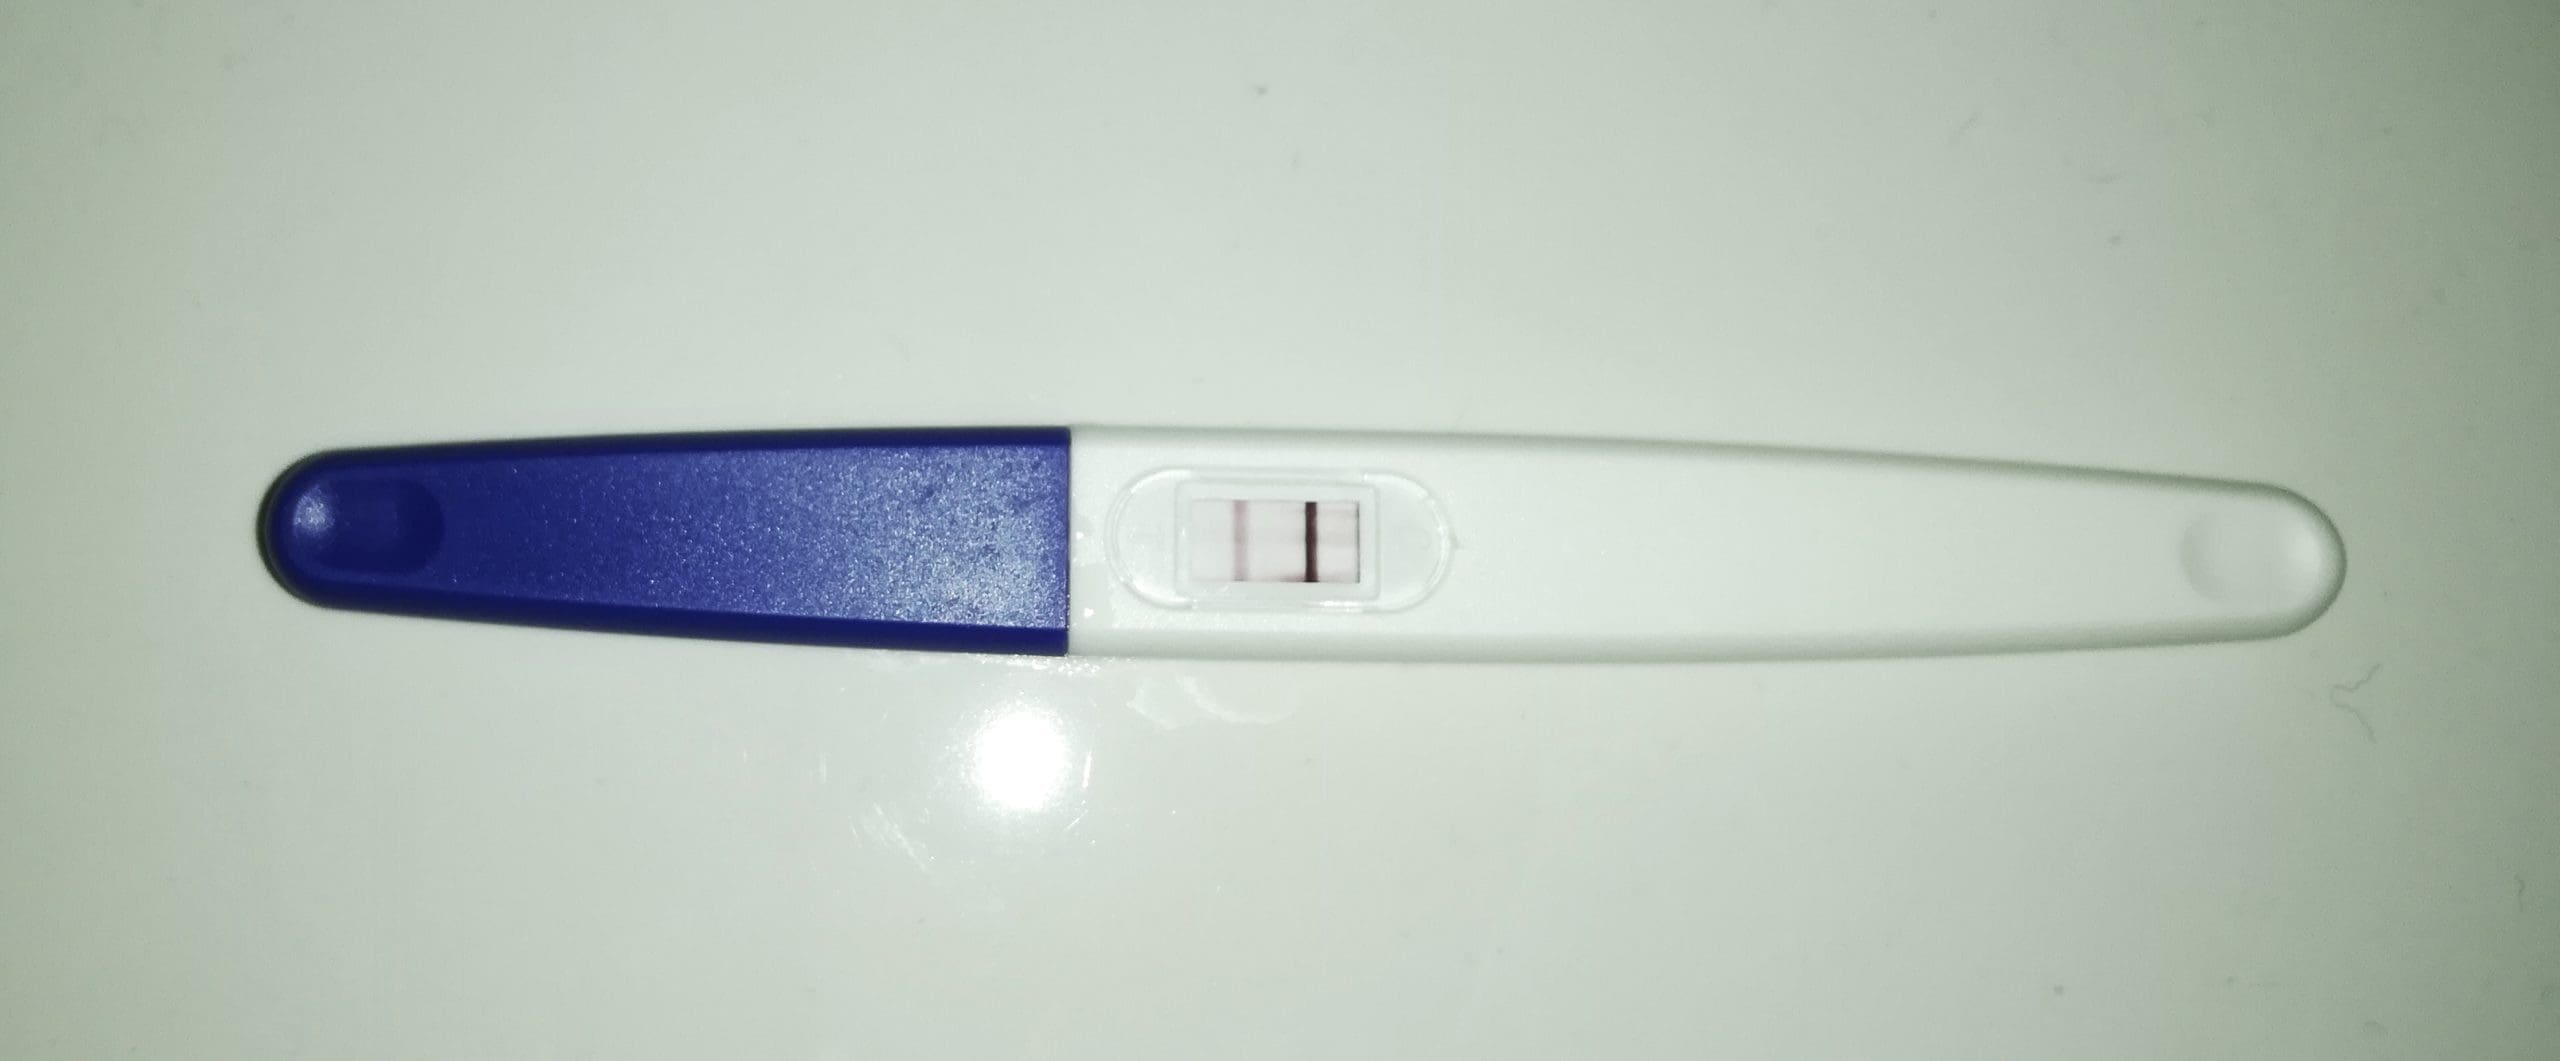 Test de grossesse positif : que faire ensuite ?